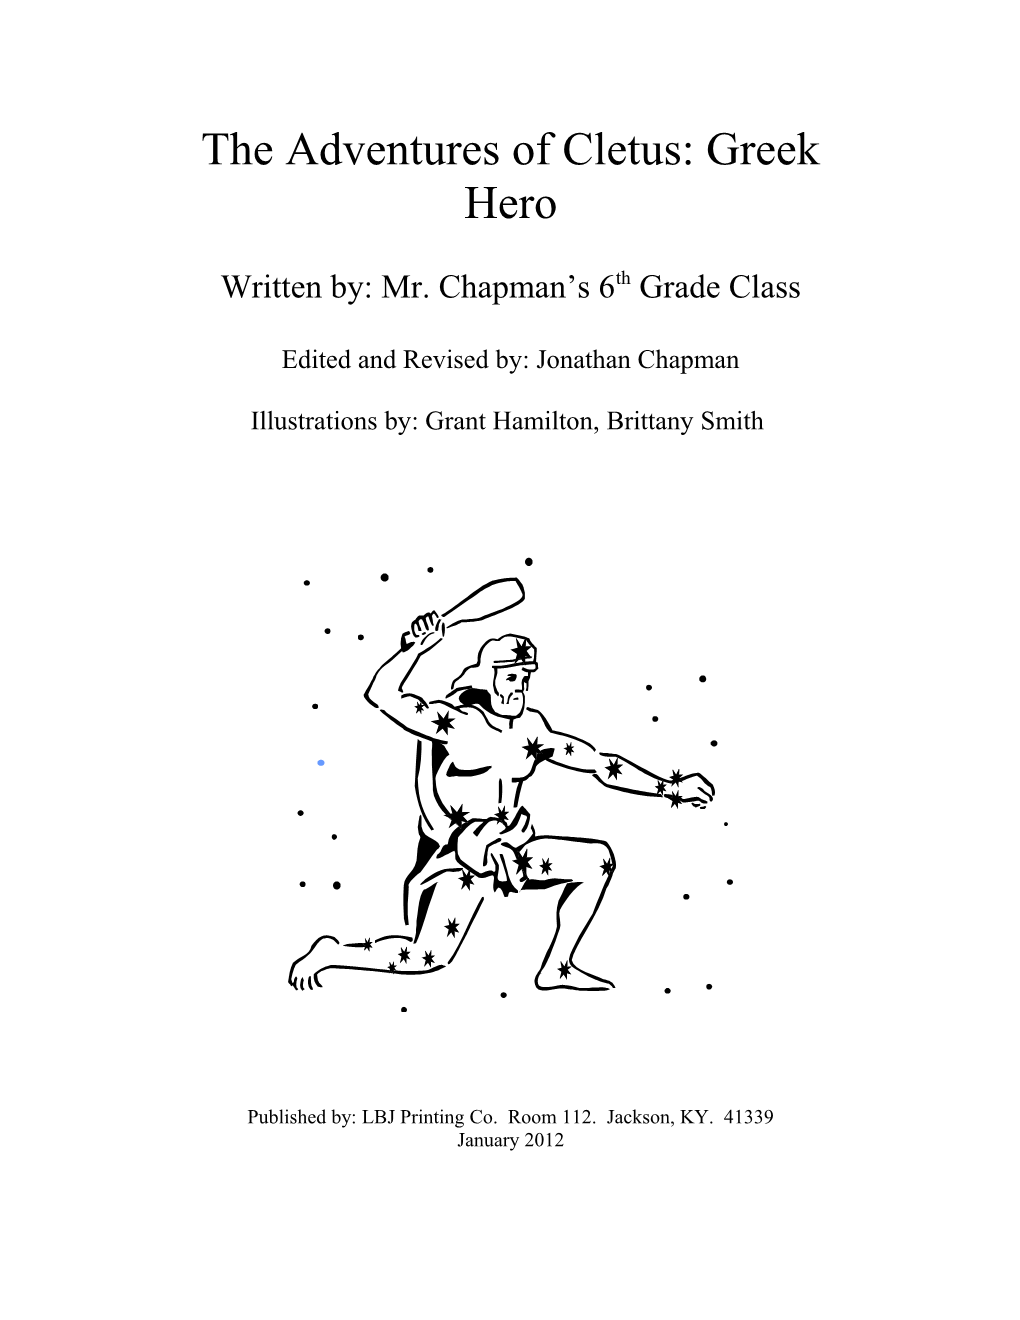 The Adventures of Cletus: Greek Hero